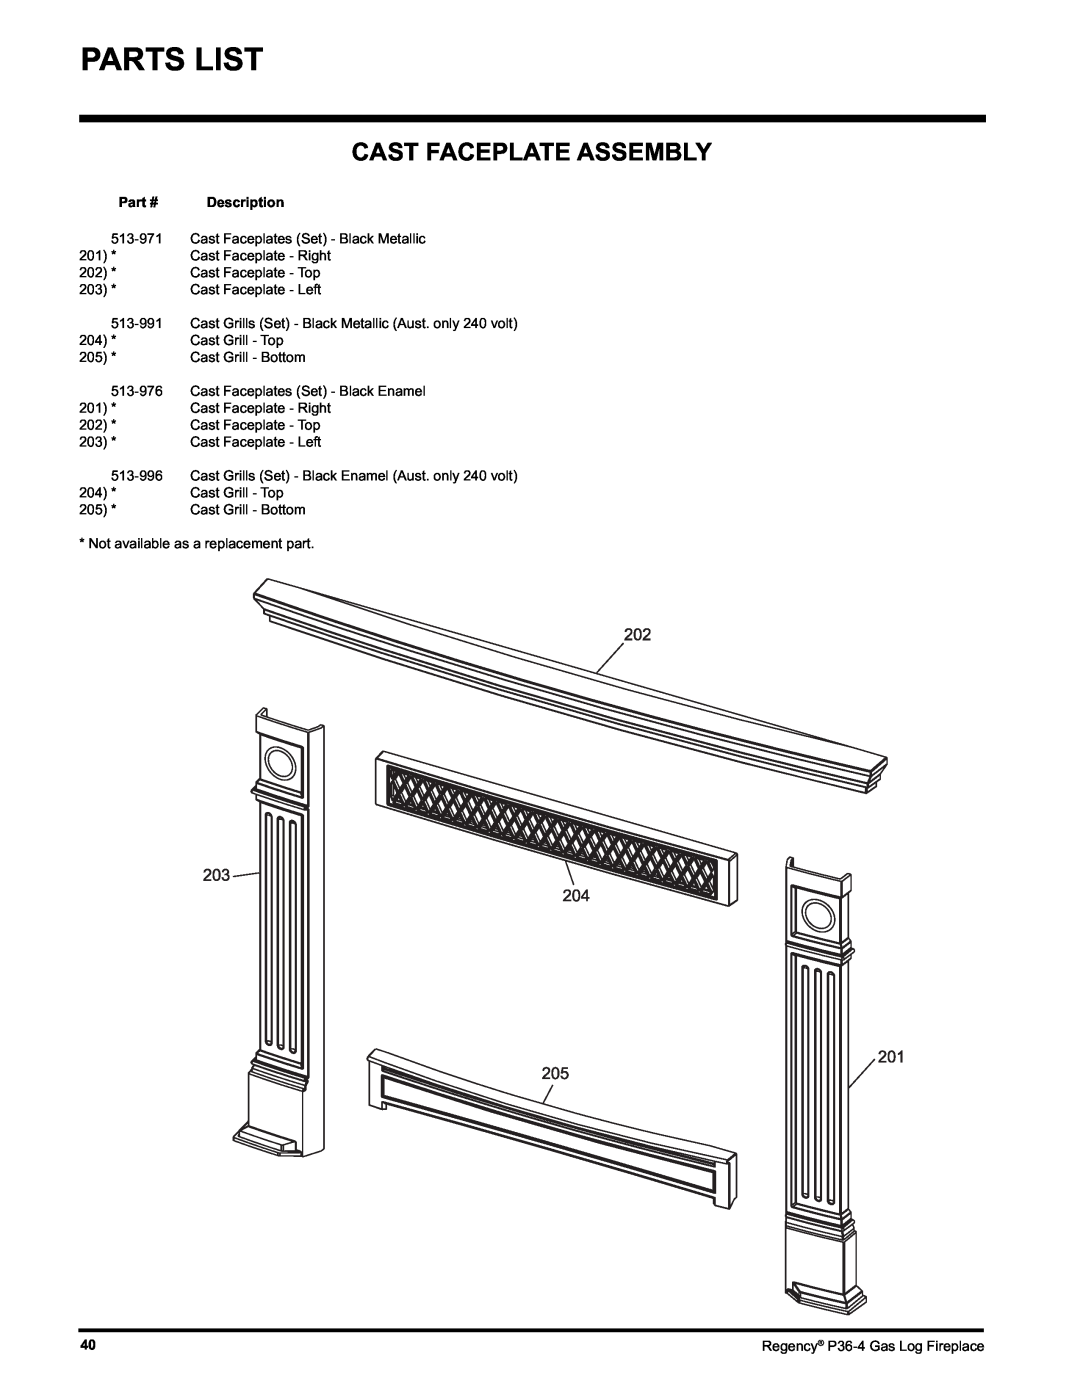 Regency Wraps P36-LPG4, P36-NG4 manual Cast Faceplate Assembly, Description 